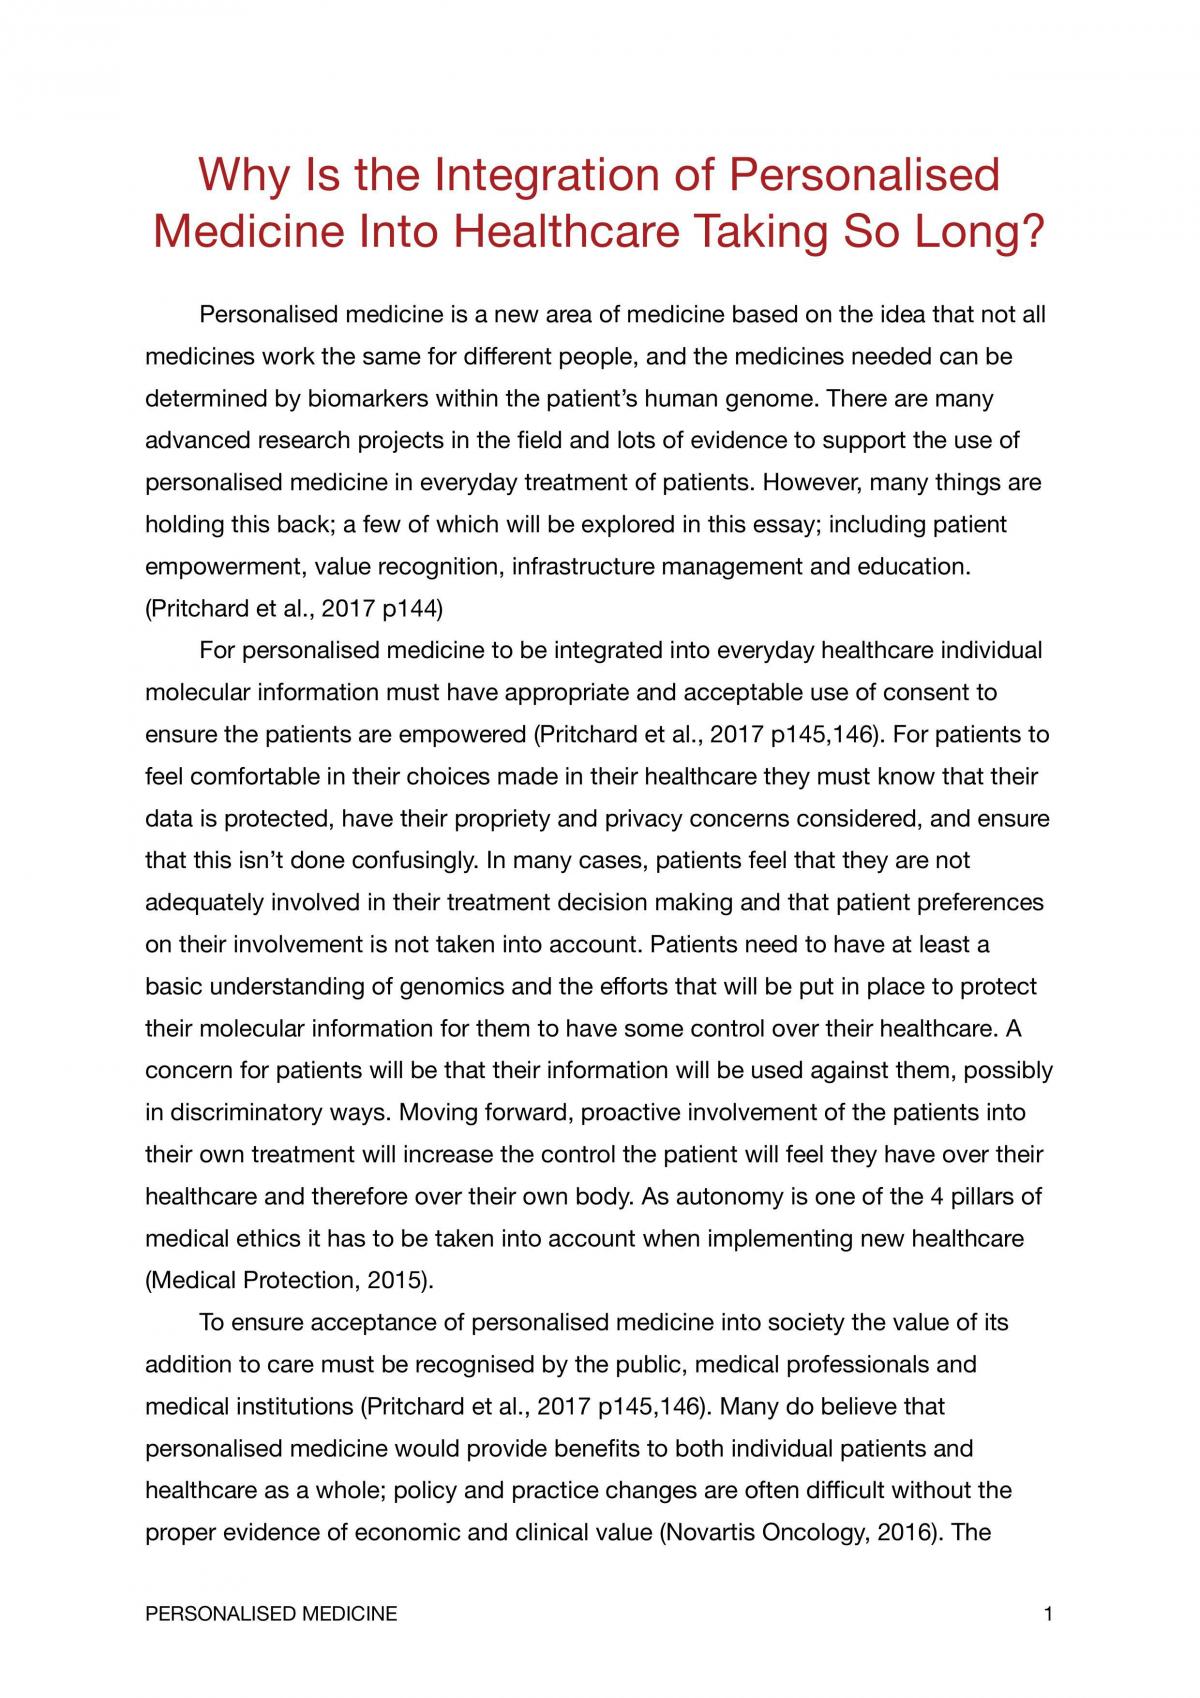 LIFE130 cycle 3 scientific essay  - Page 1